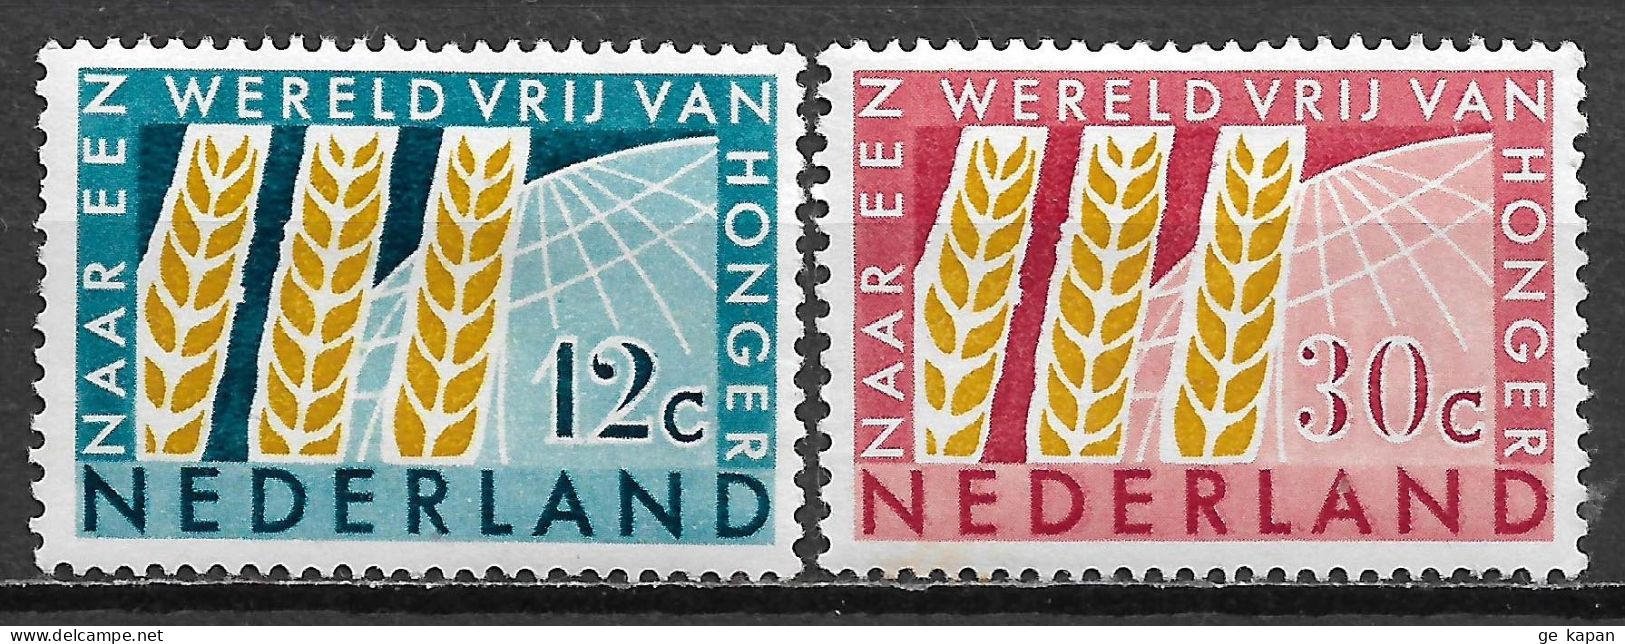 1963 NETHERLANDS Complete Set Of 2 MVLH STAMPS (Michel # 791,792) CV €1.50 - Ongebruikt